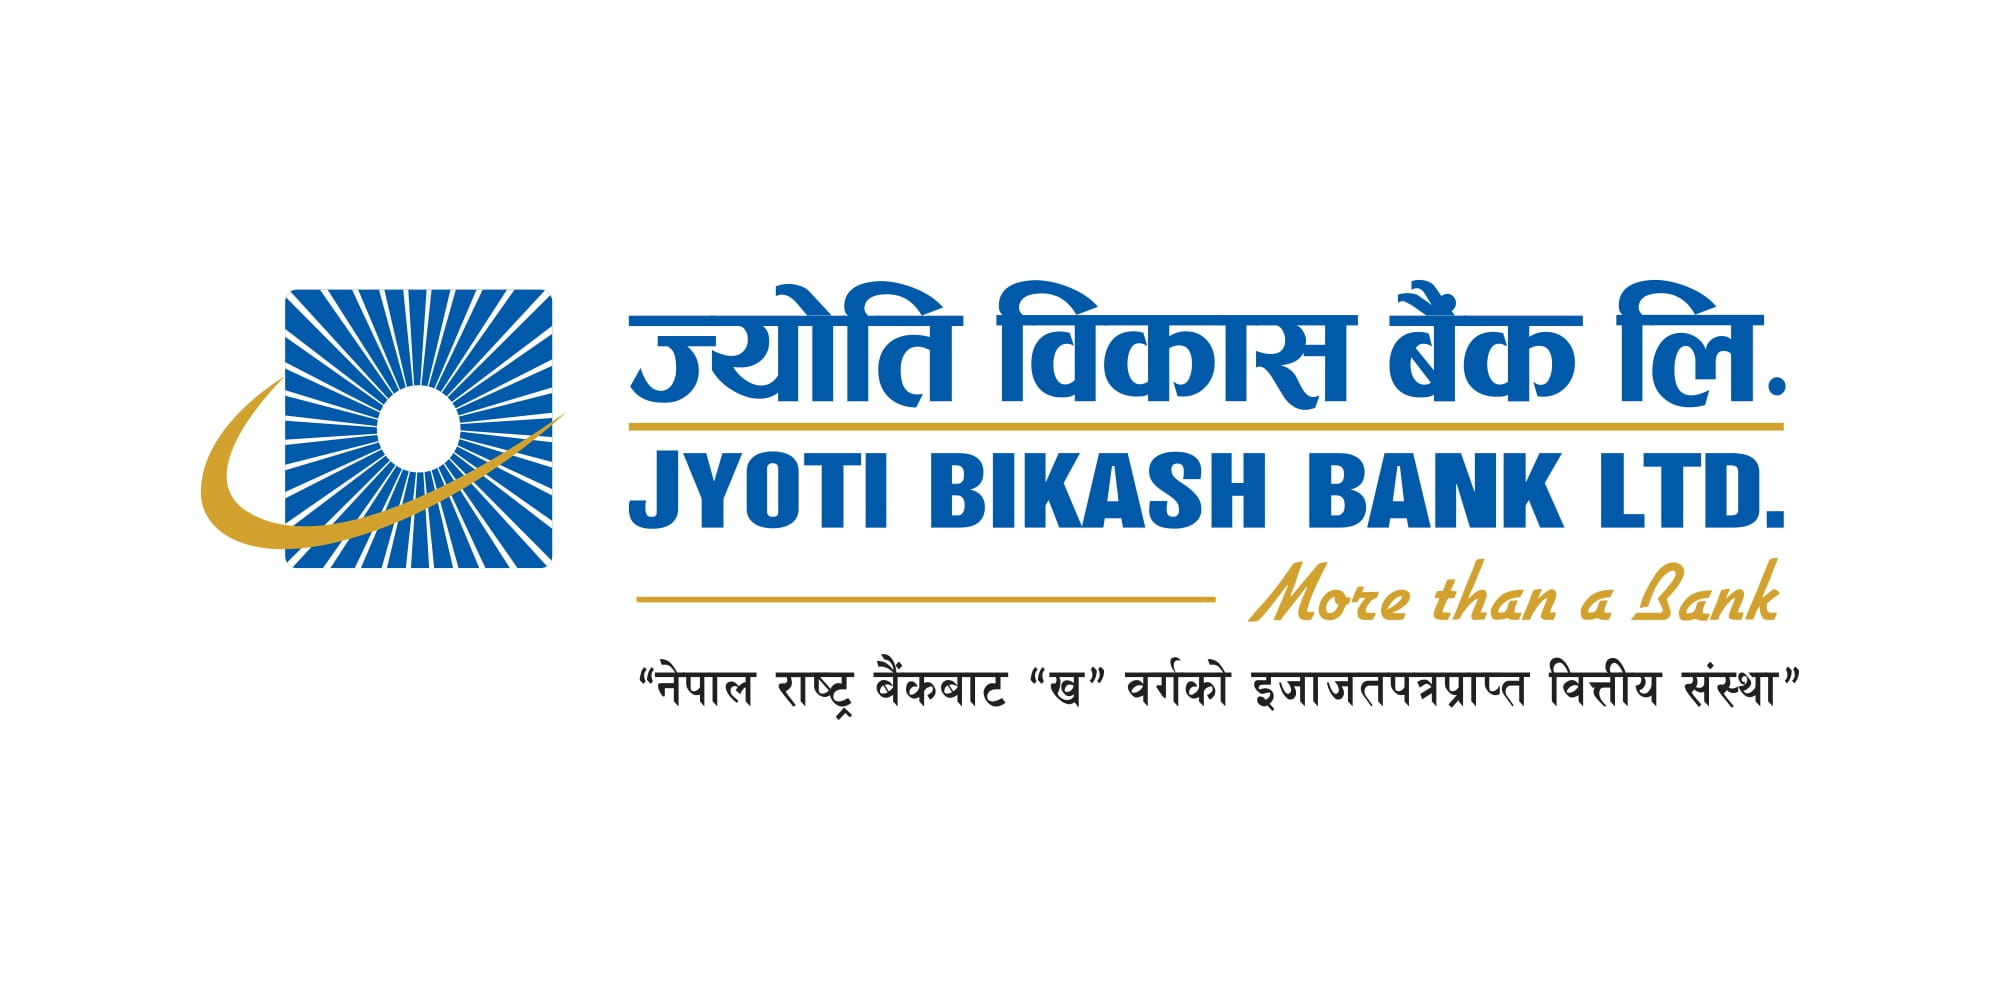 Jyoti Bikash Bank Ltd